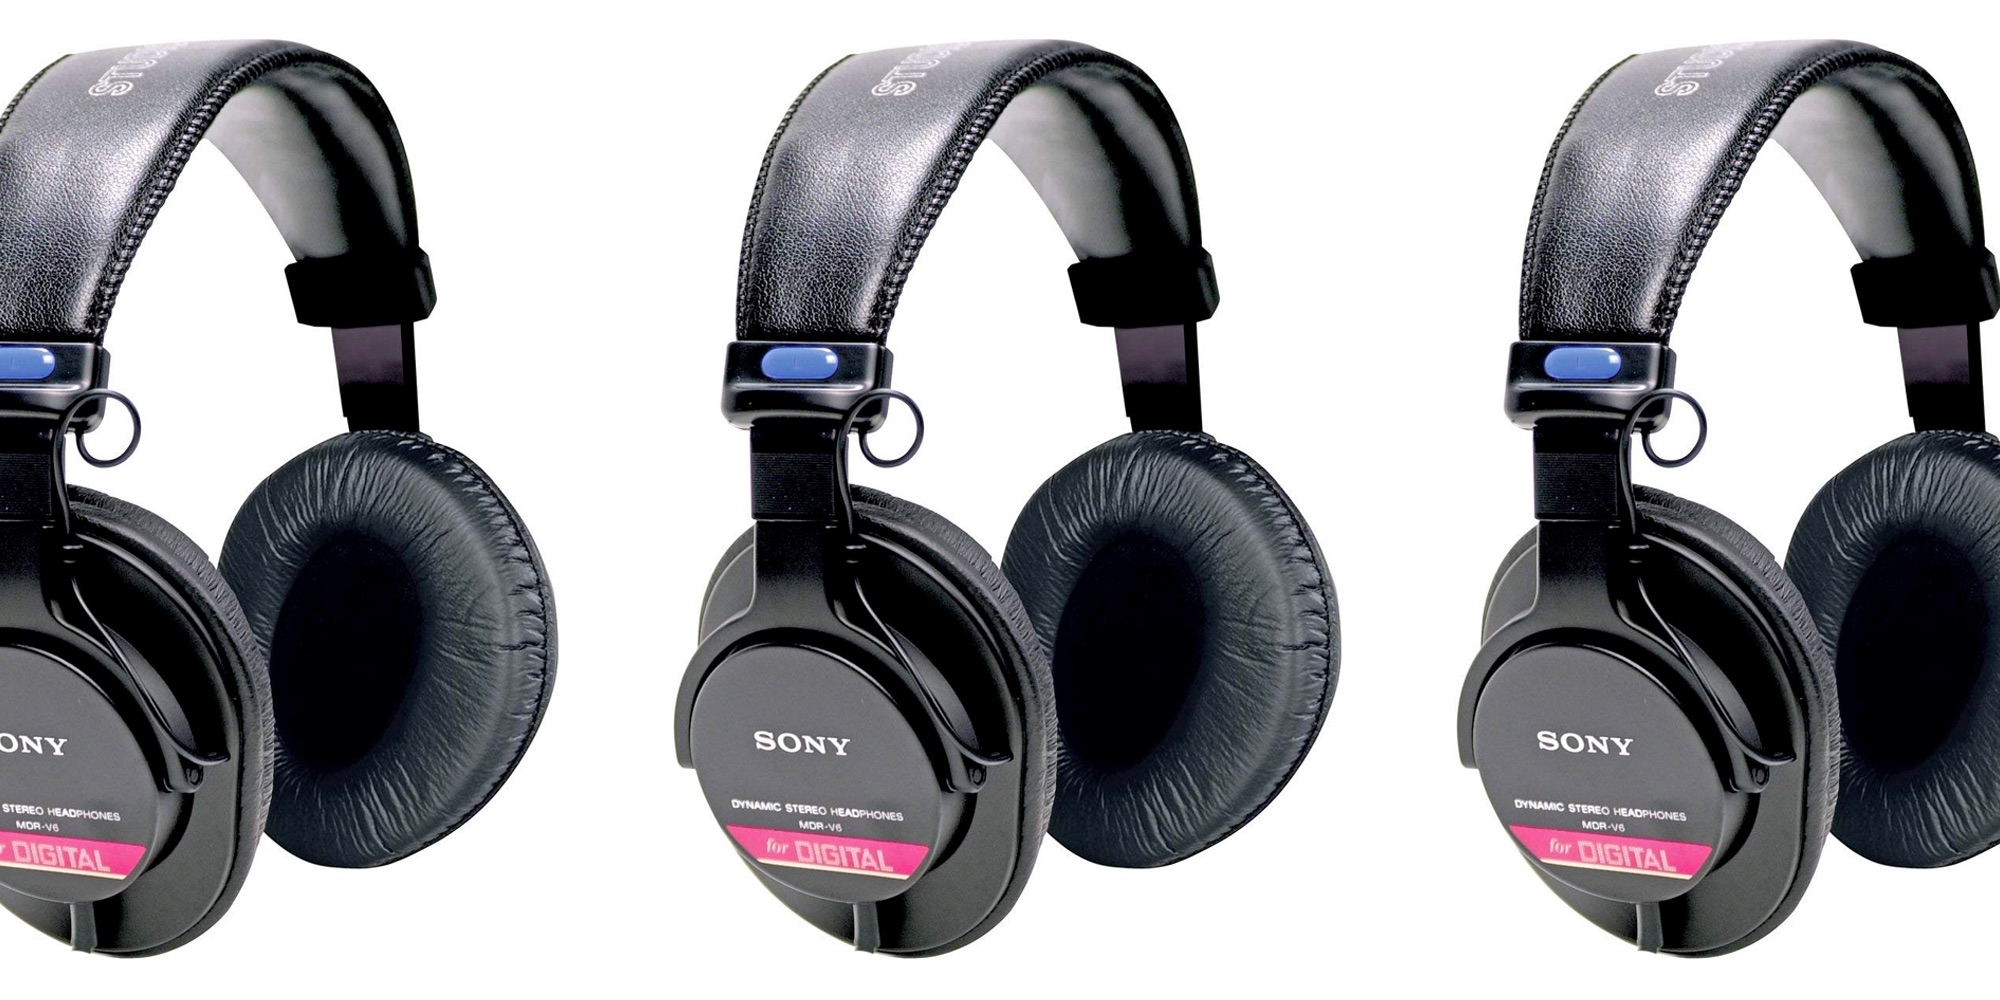 Sony-MDR-V6-Headphones-01.jpg